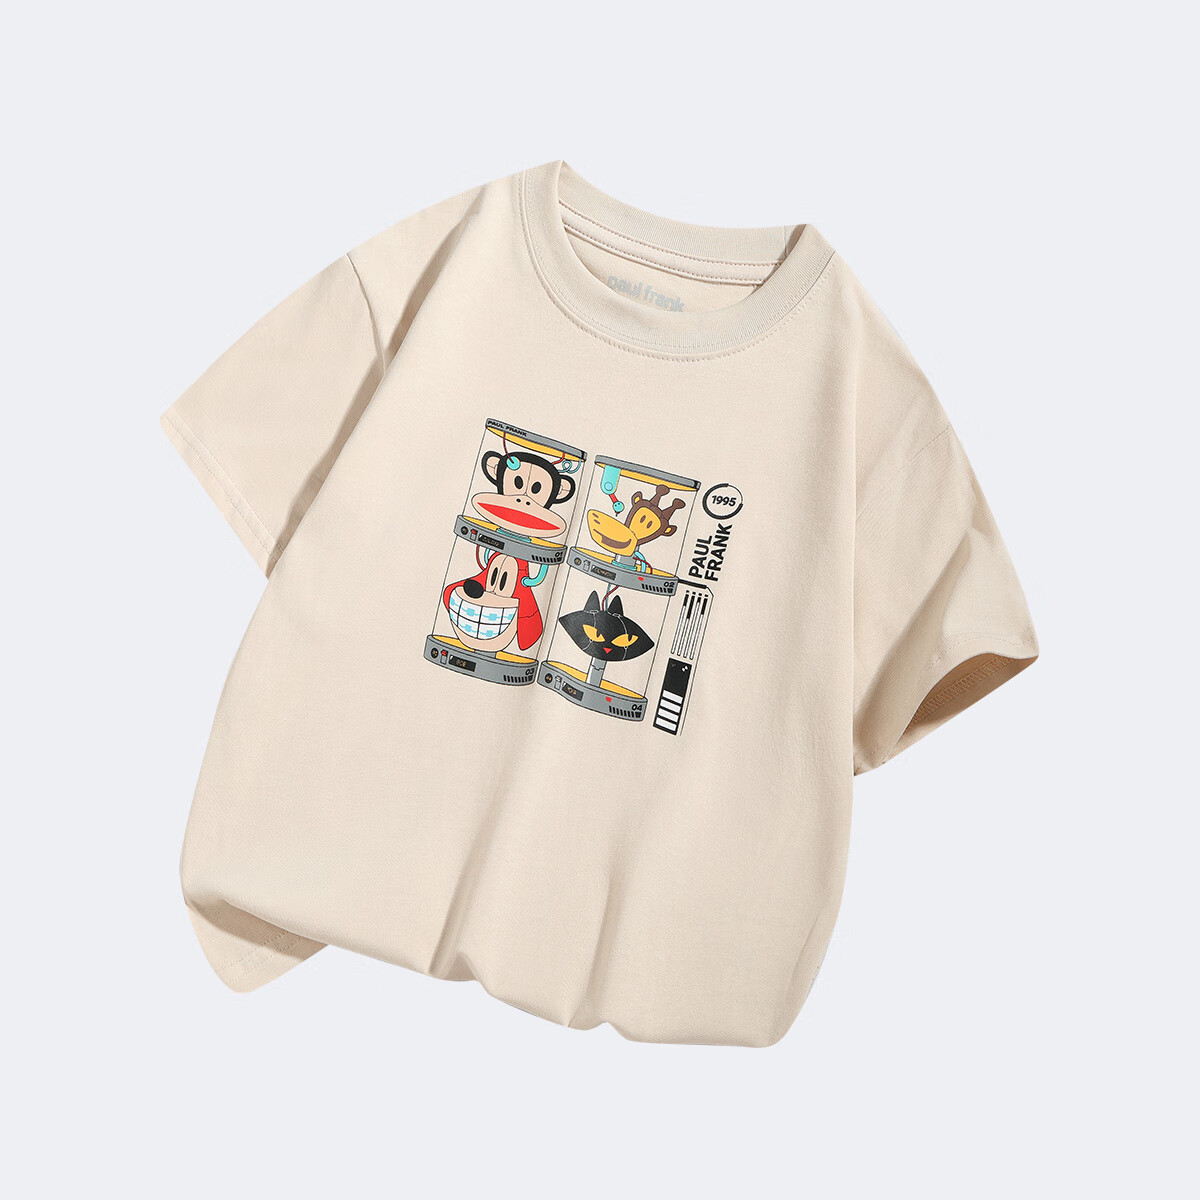 大嘴猴 儿童纯棉短袖T恤 拍2件 29.1元包邮（合14.55元/件）